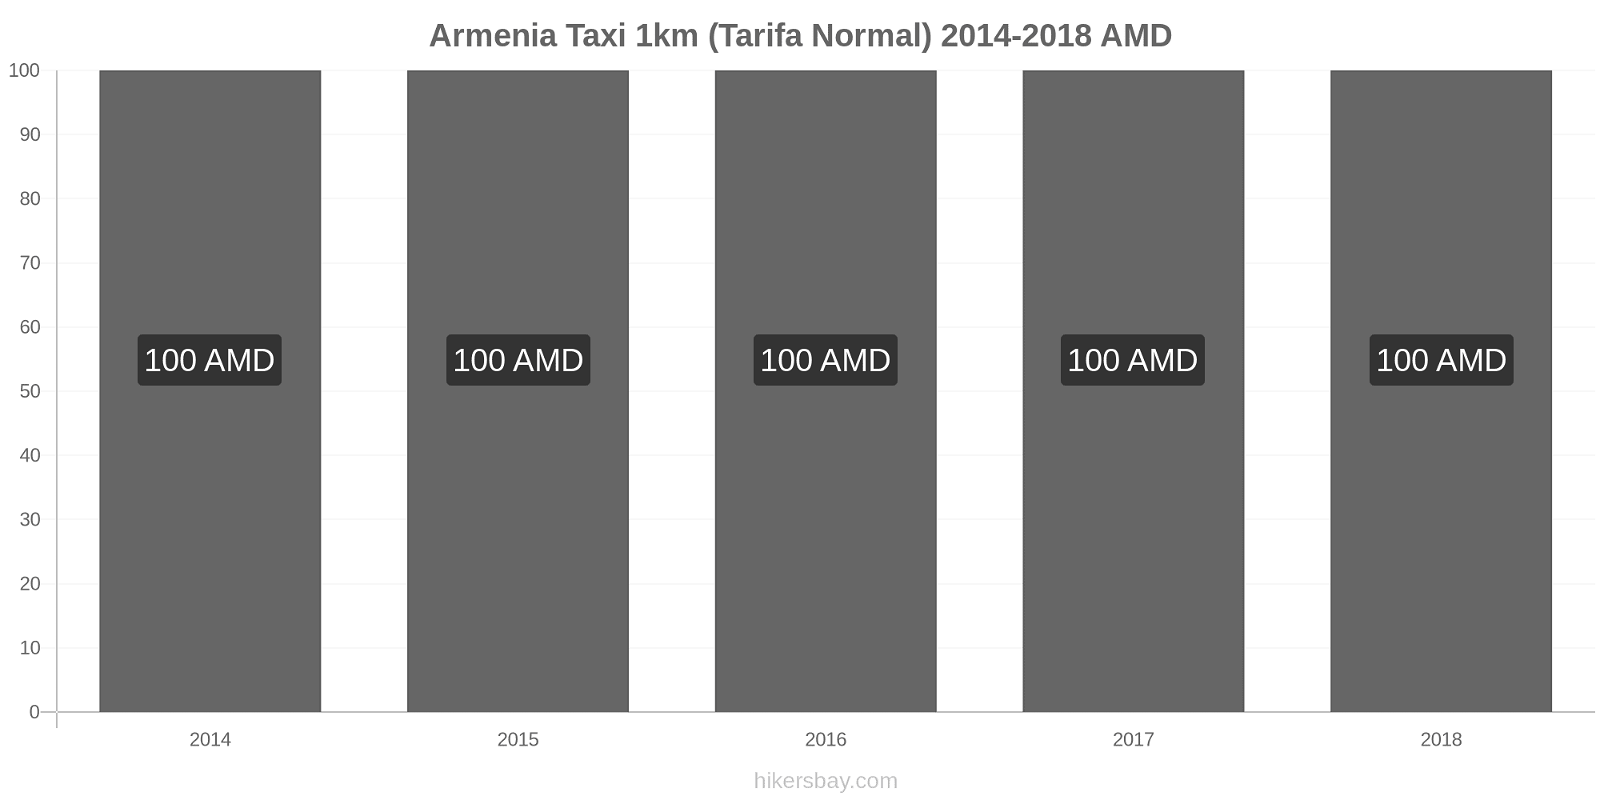 Armenia cambios de precios Taxi 1km (tarifa normal) hikersbay.com